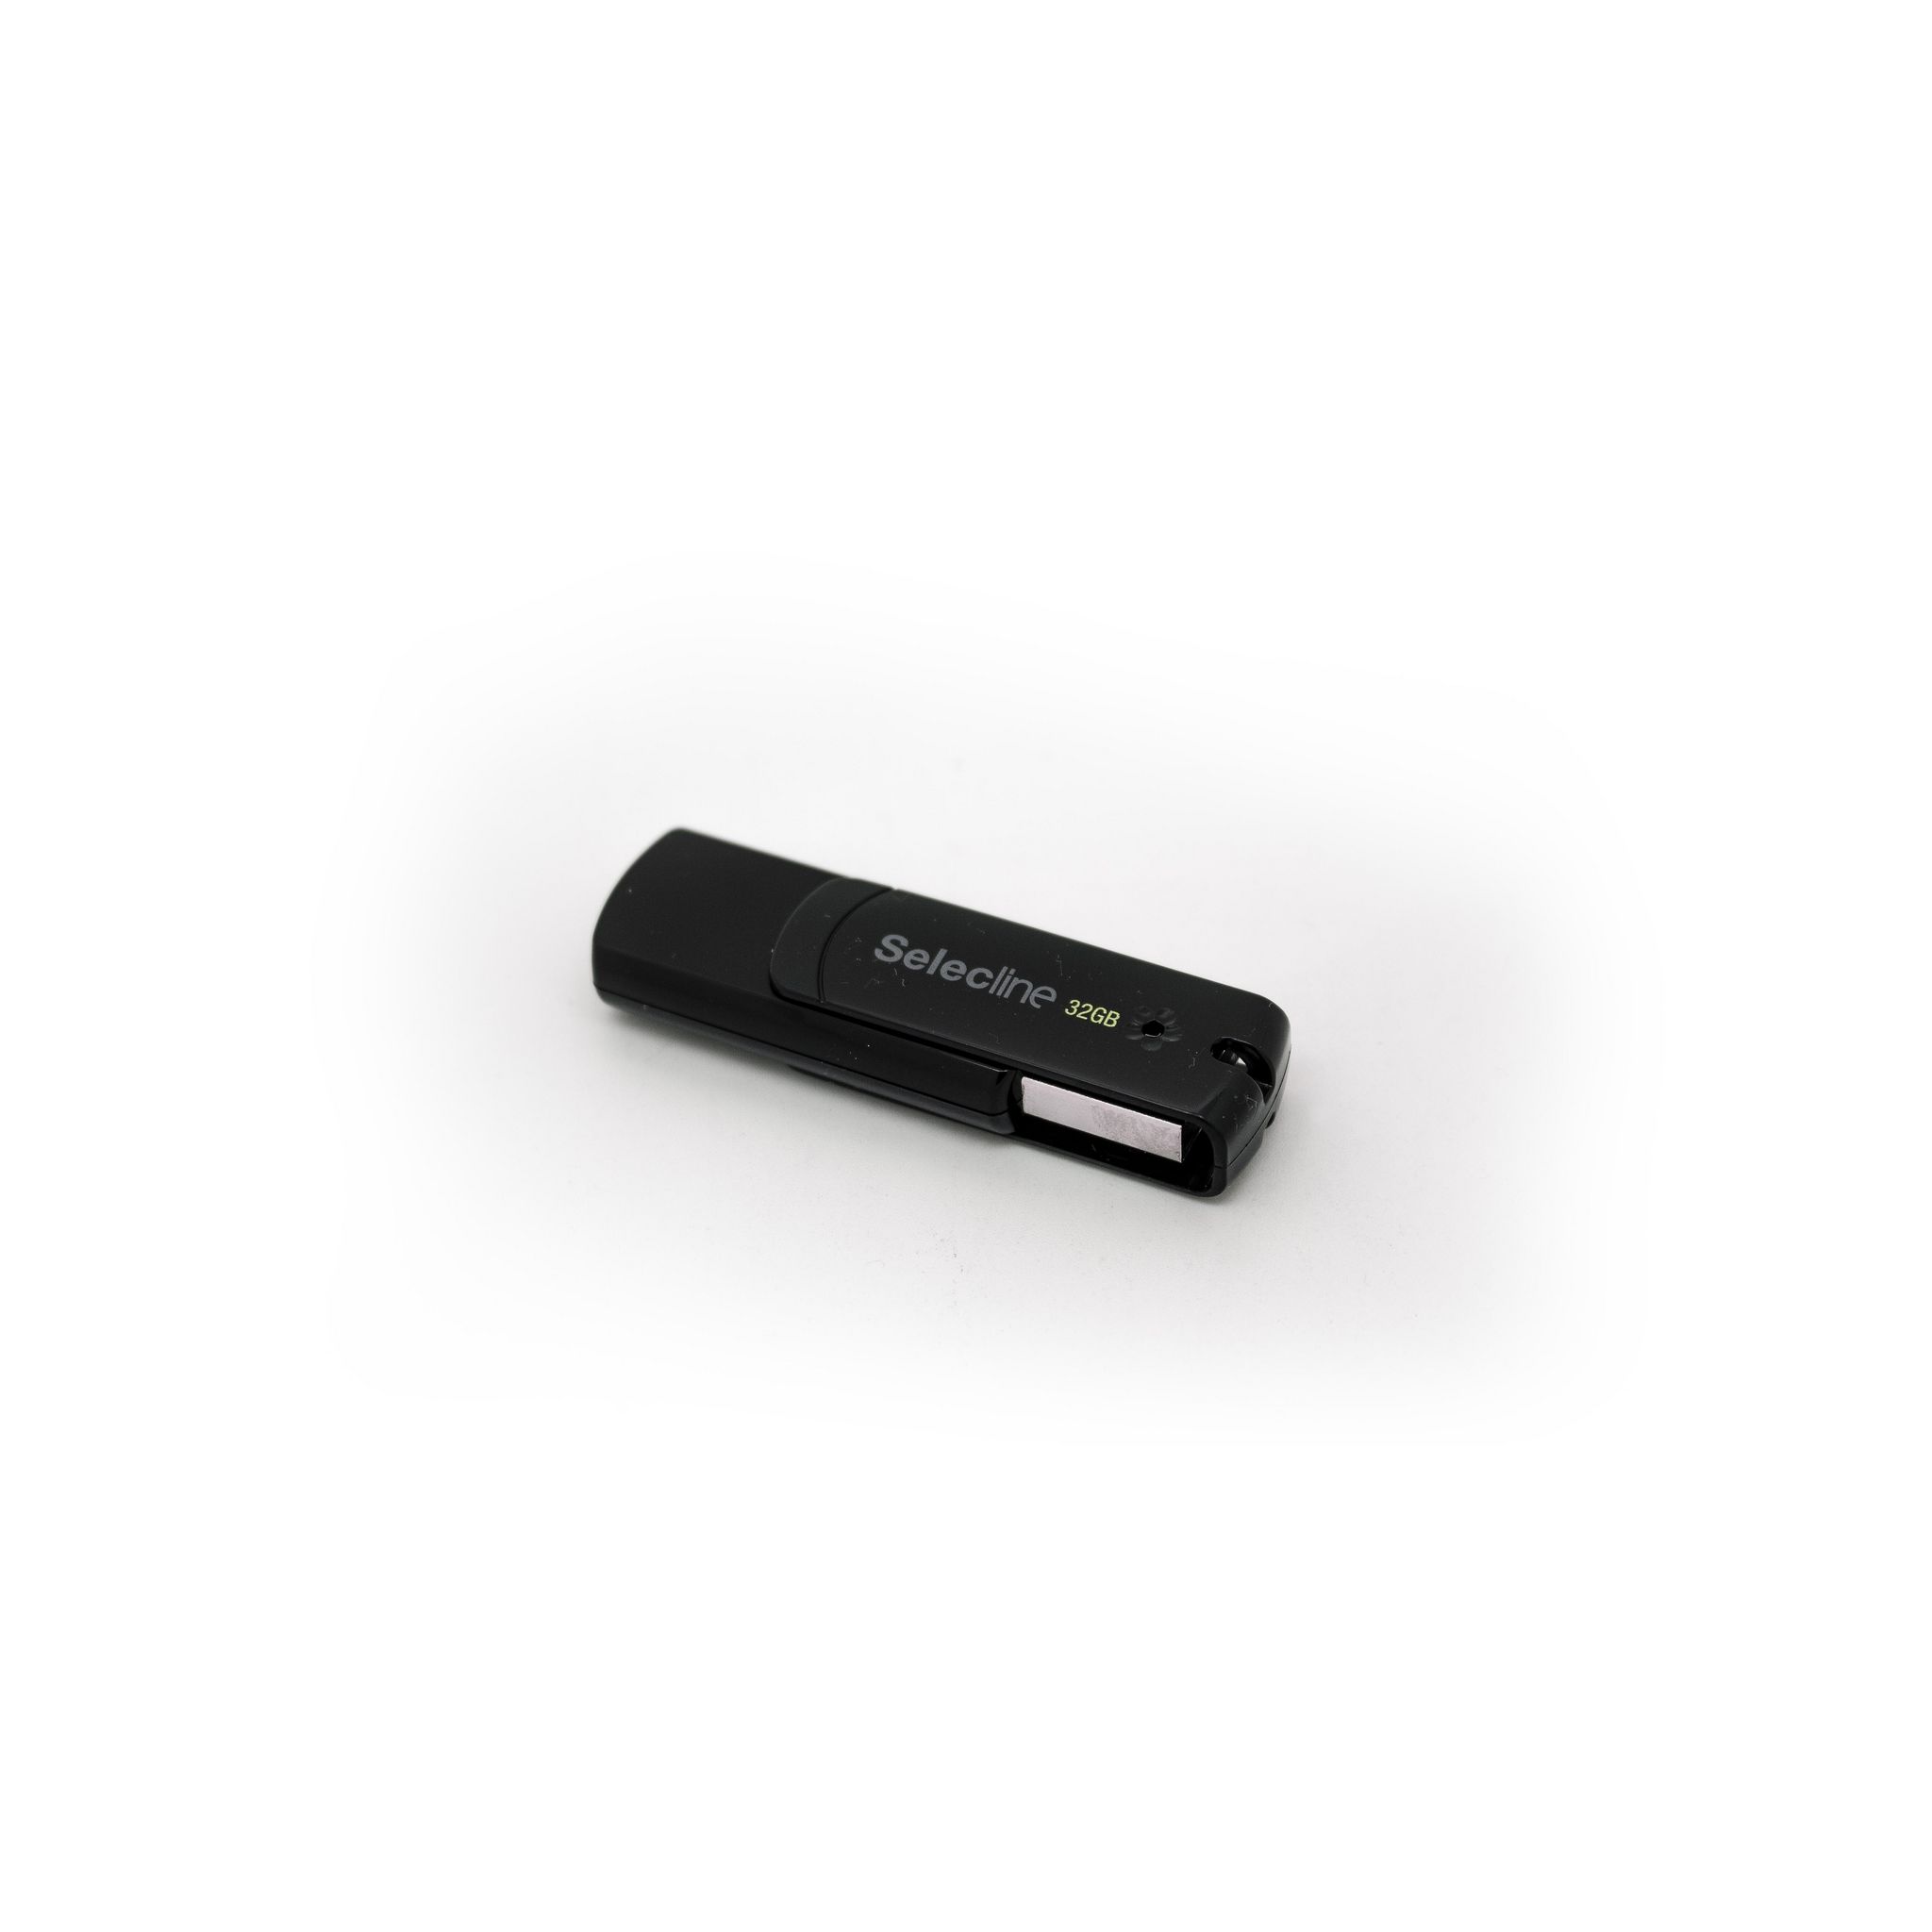 SELECLINE Clé USB 32GO C160 NR/VRT - Noir et vert pas cher 